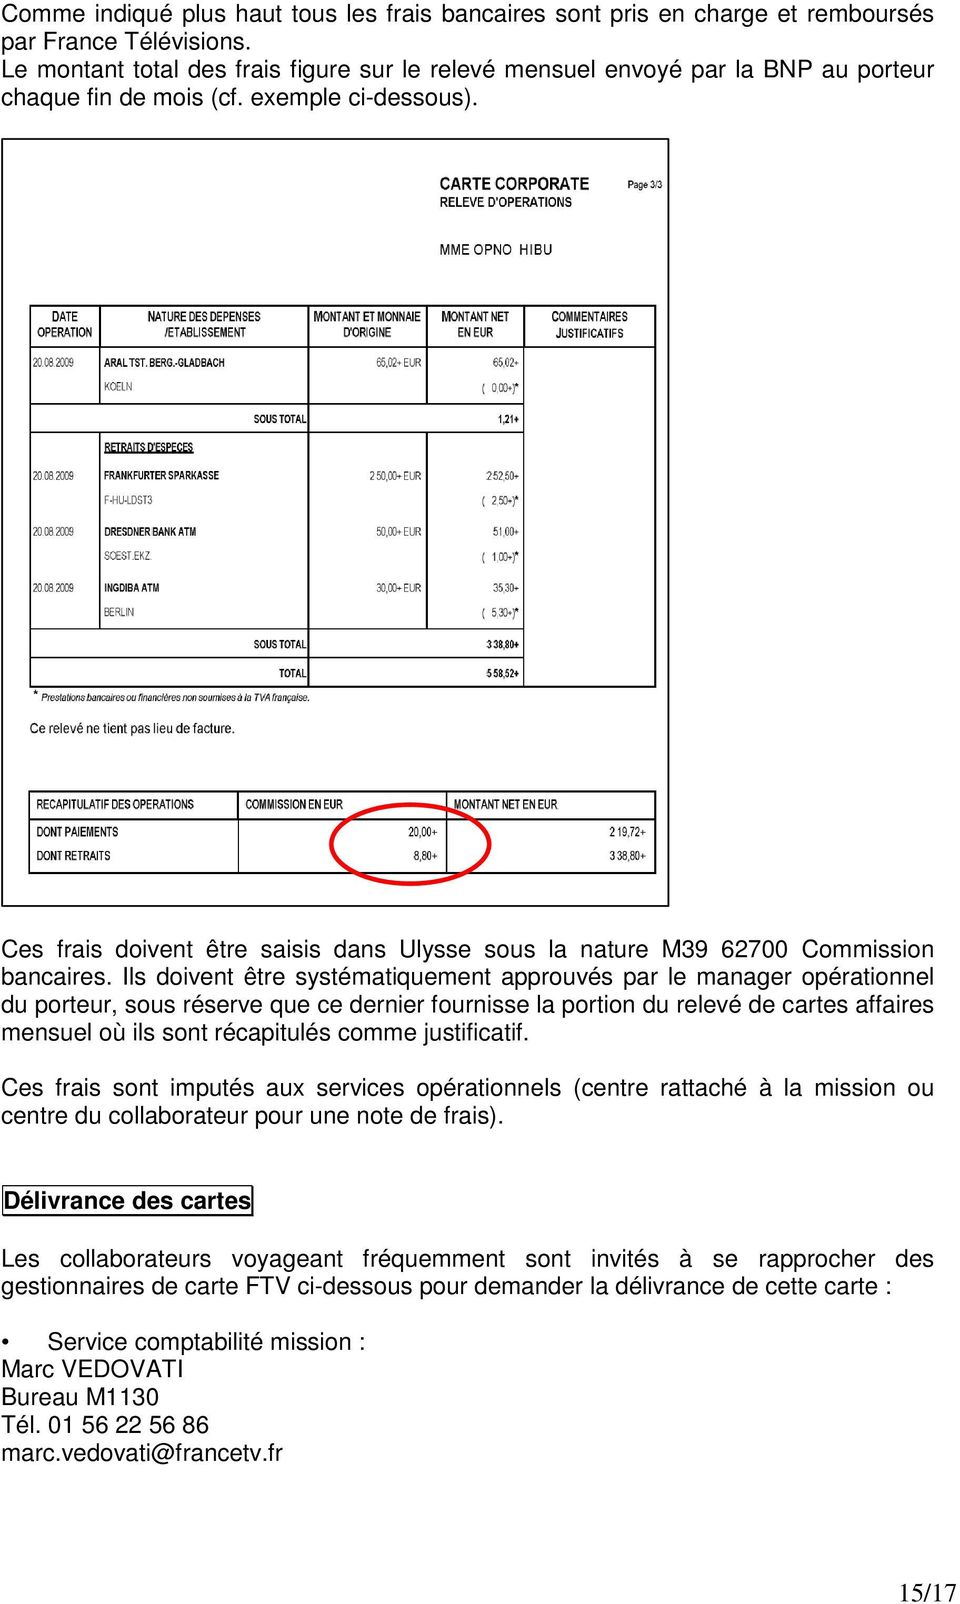 Ces frais doivent être saisis dans Ulysse sous la nature M39 62700 Commission bancaires.